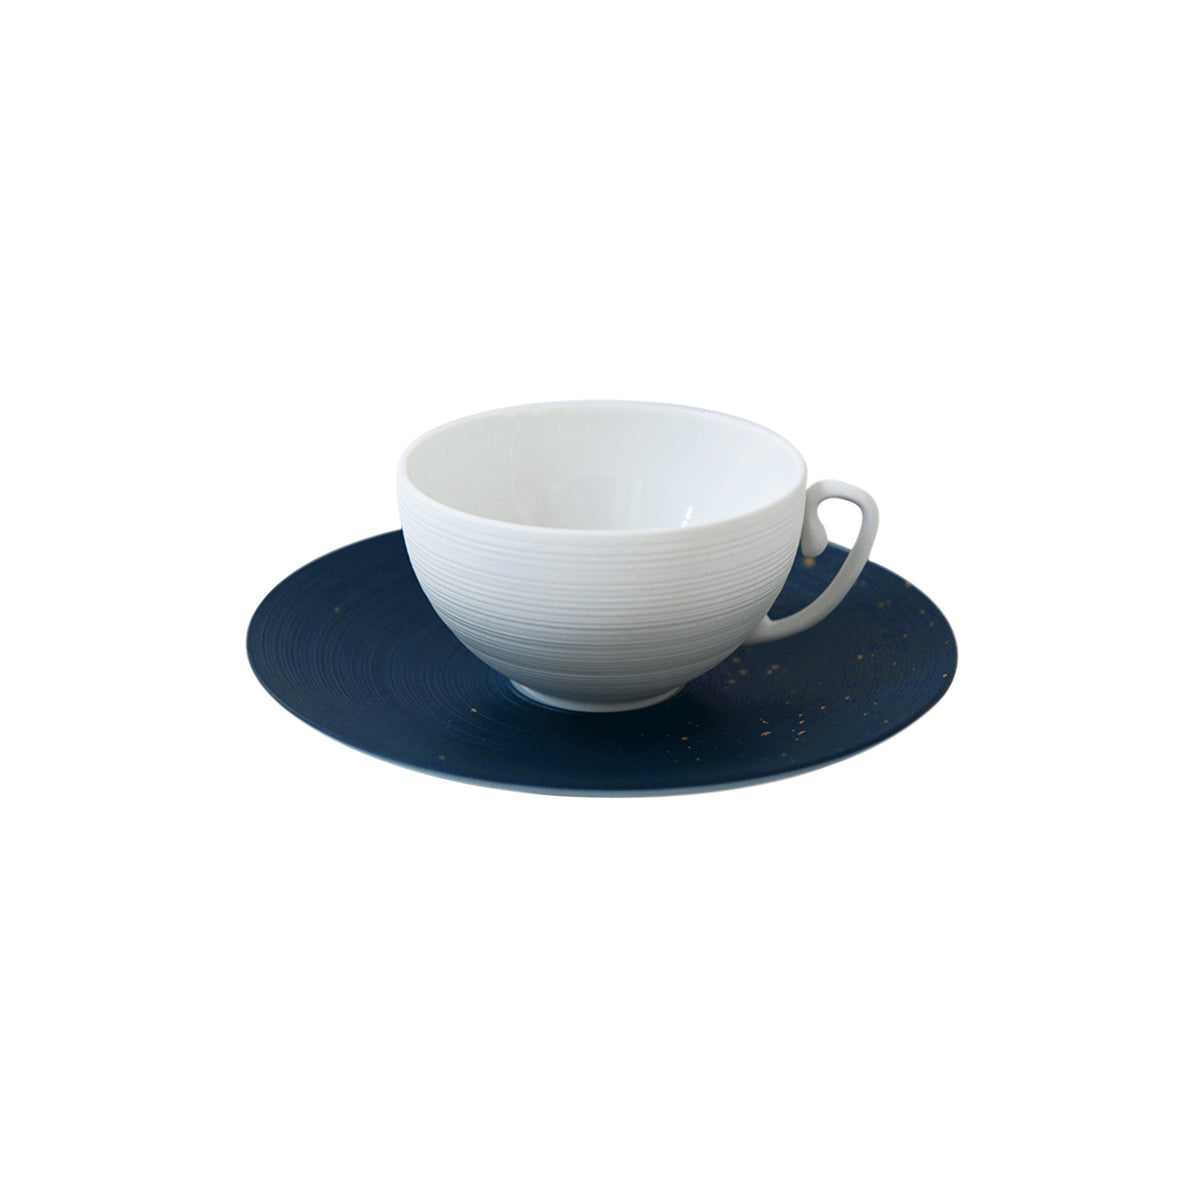 Lutetia by Achille Salvagni - Tea set (cup & saucer)